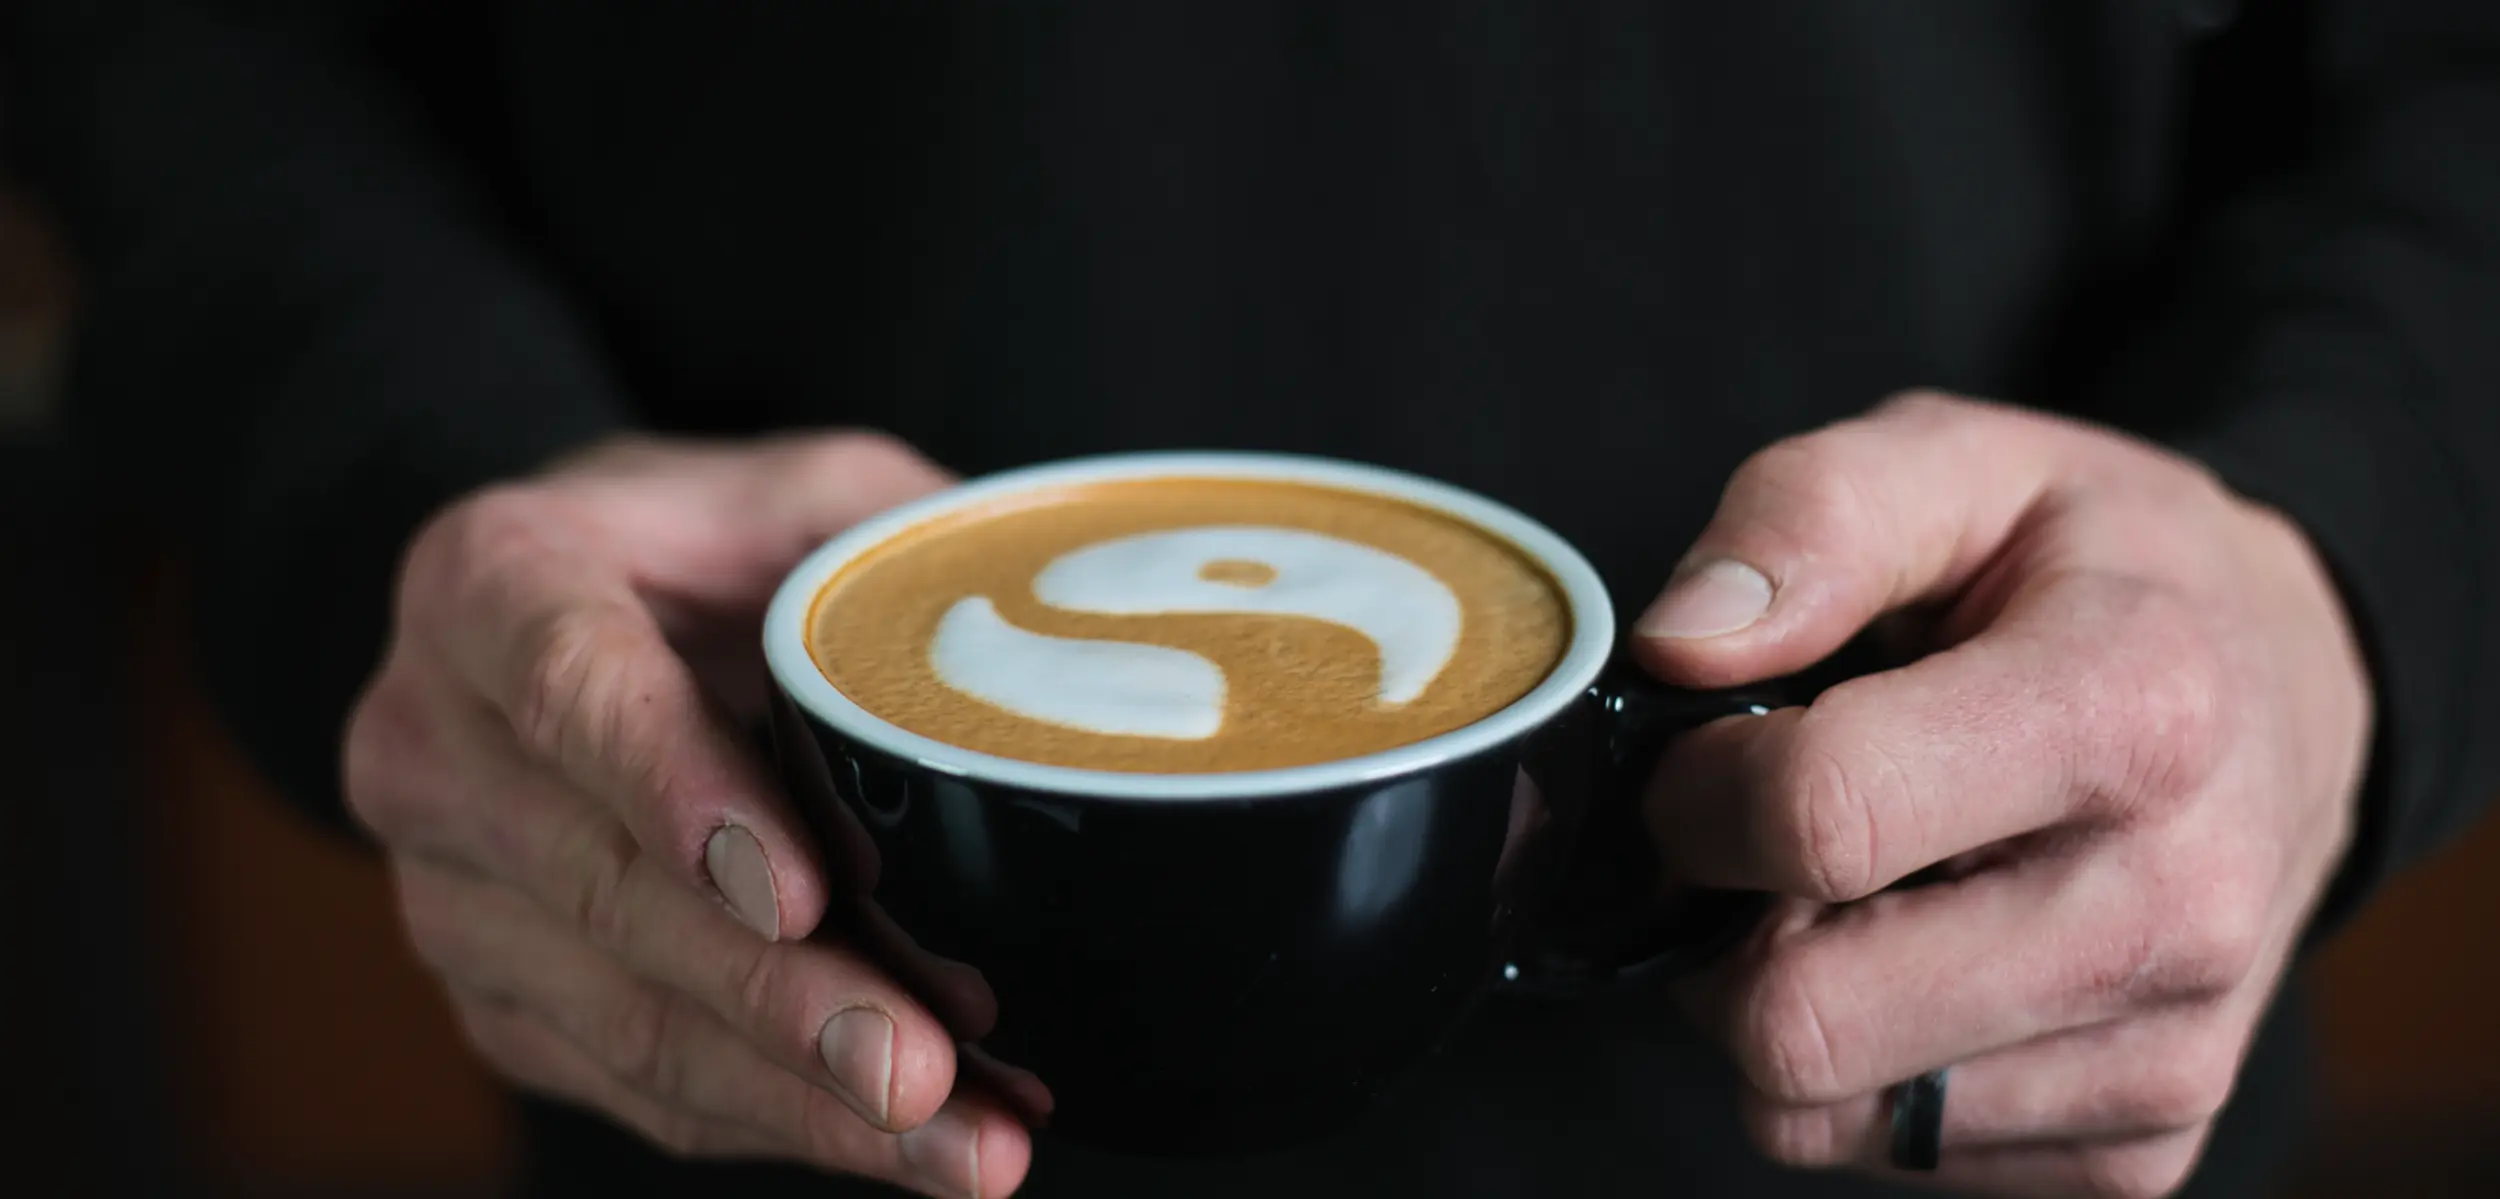 Priset på kaffe historiskt högt – vad betyder det?